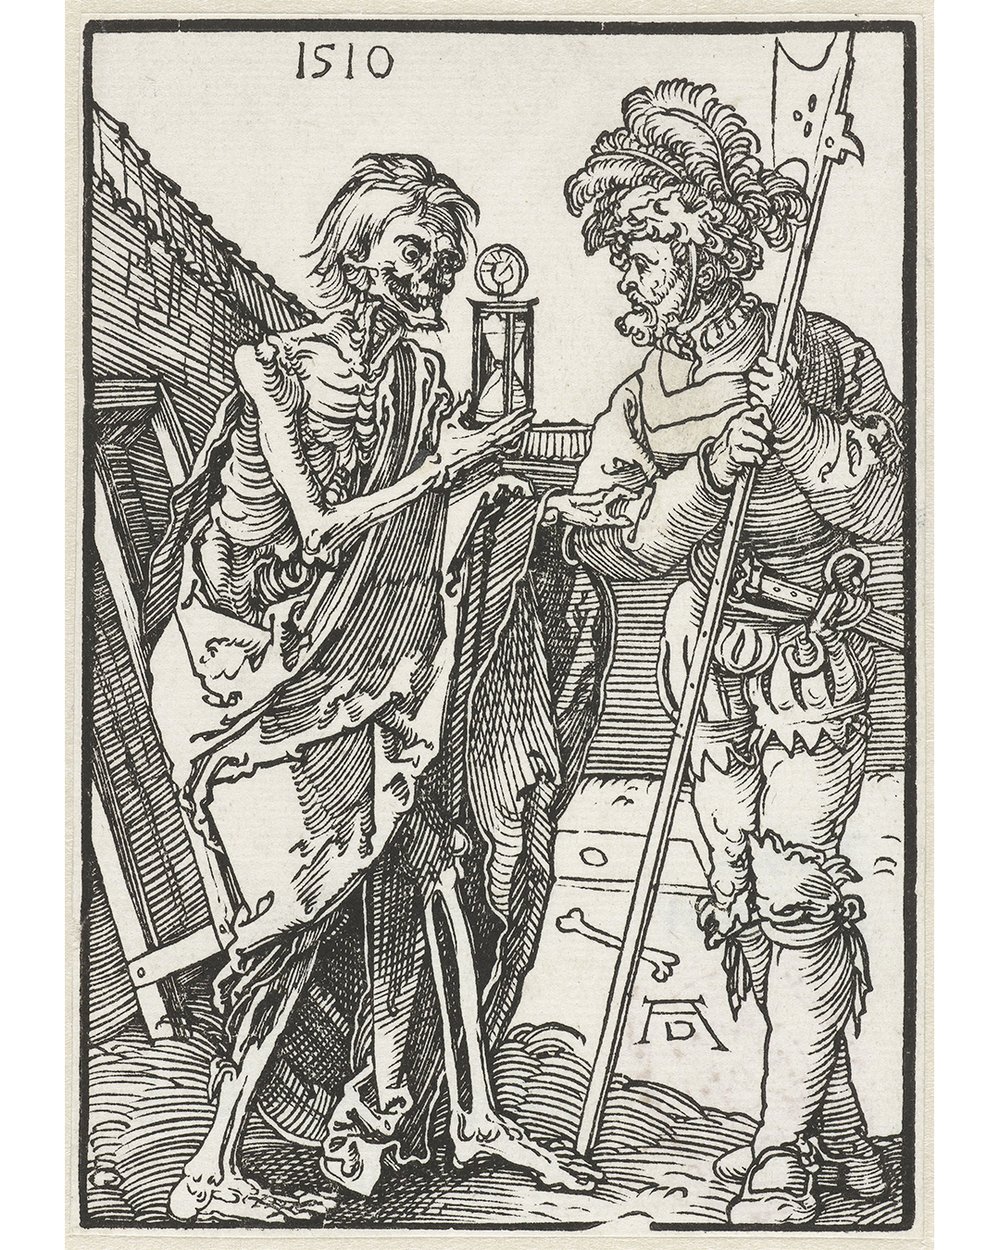 Albrecht Dürer (1510)